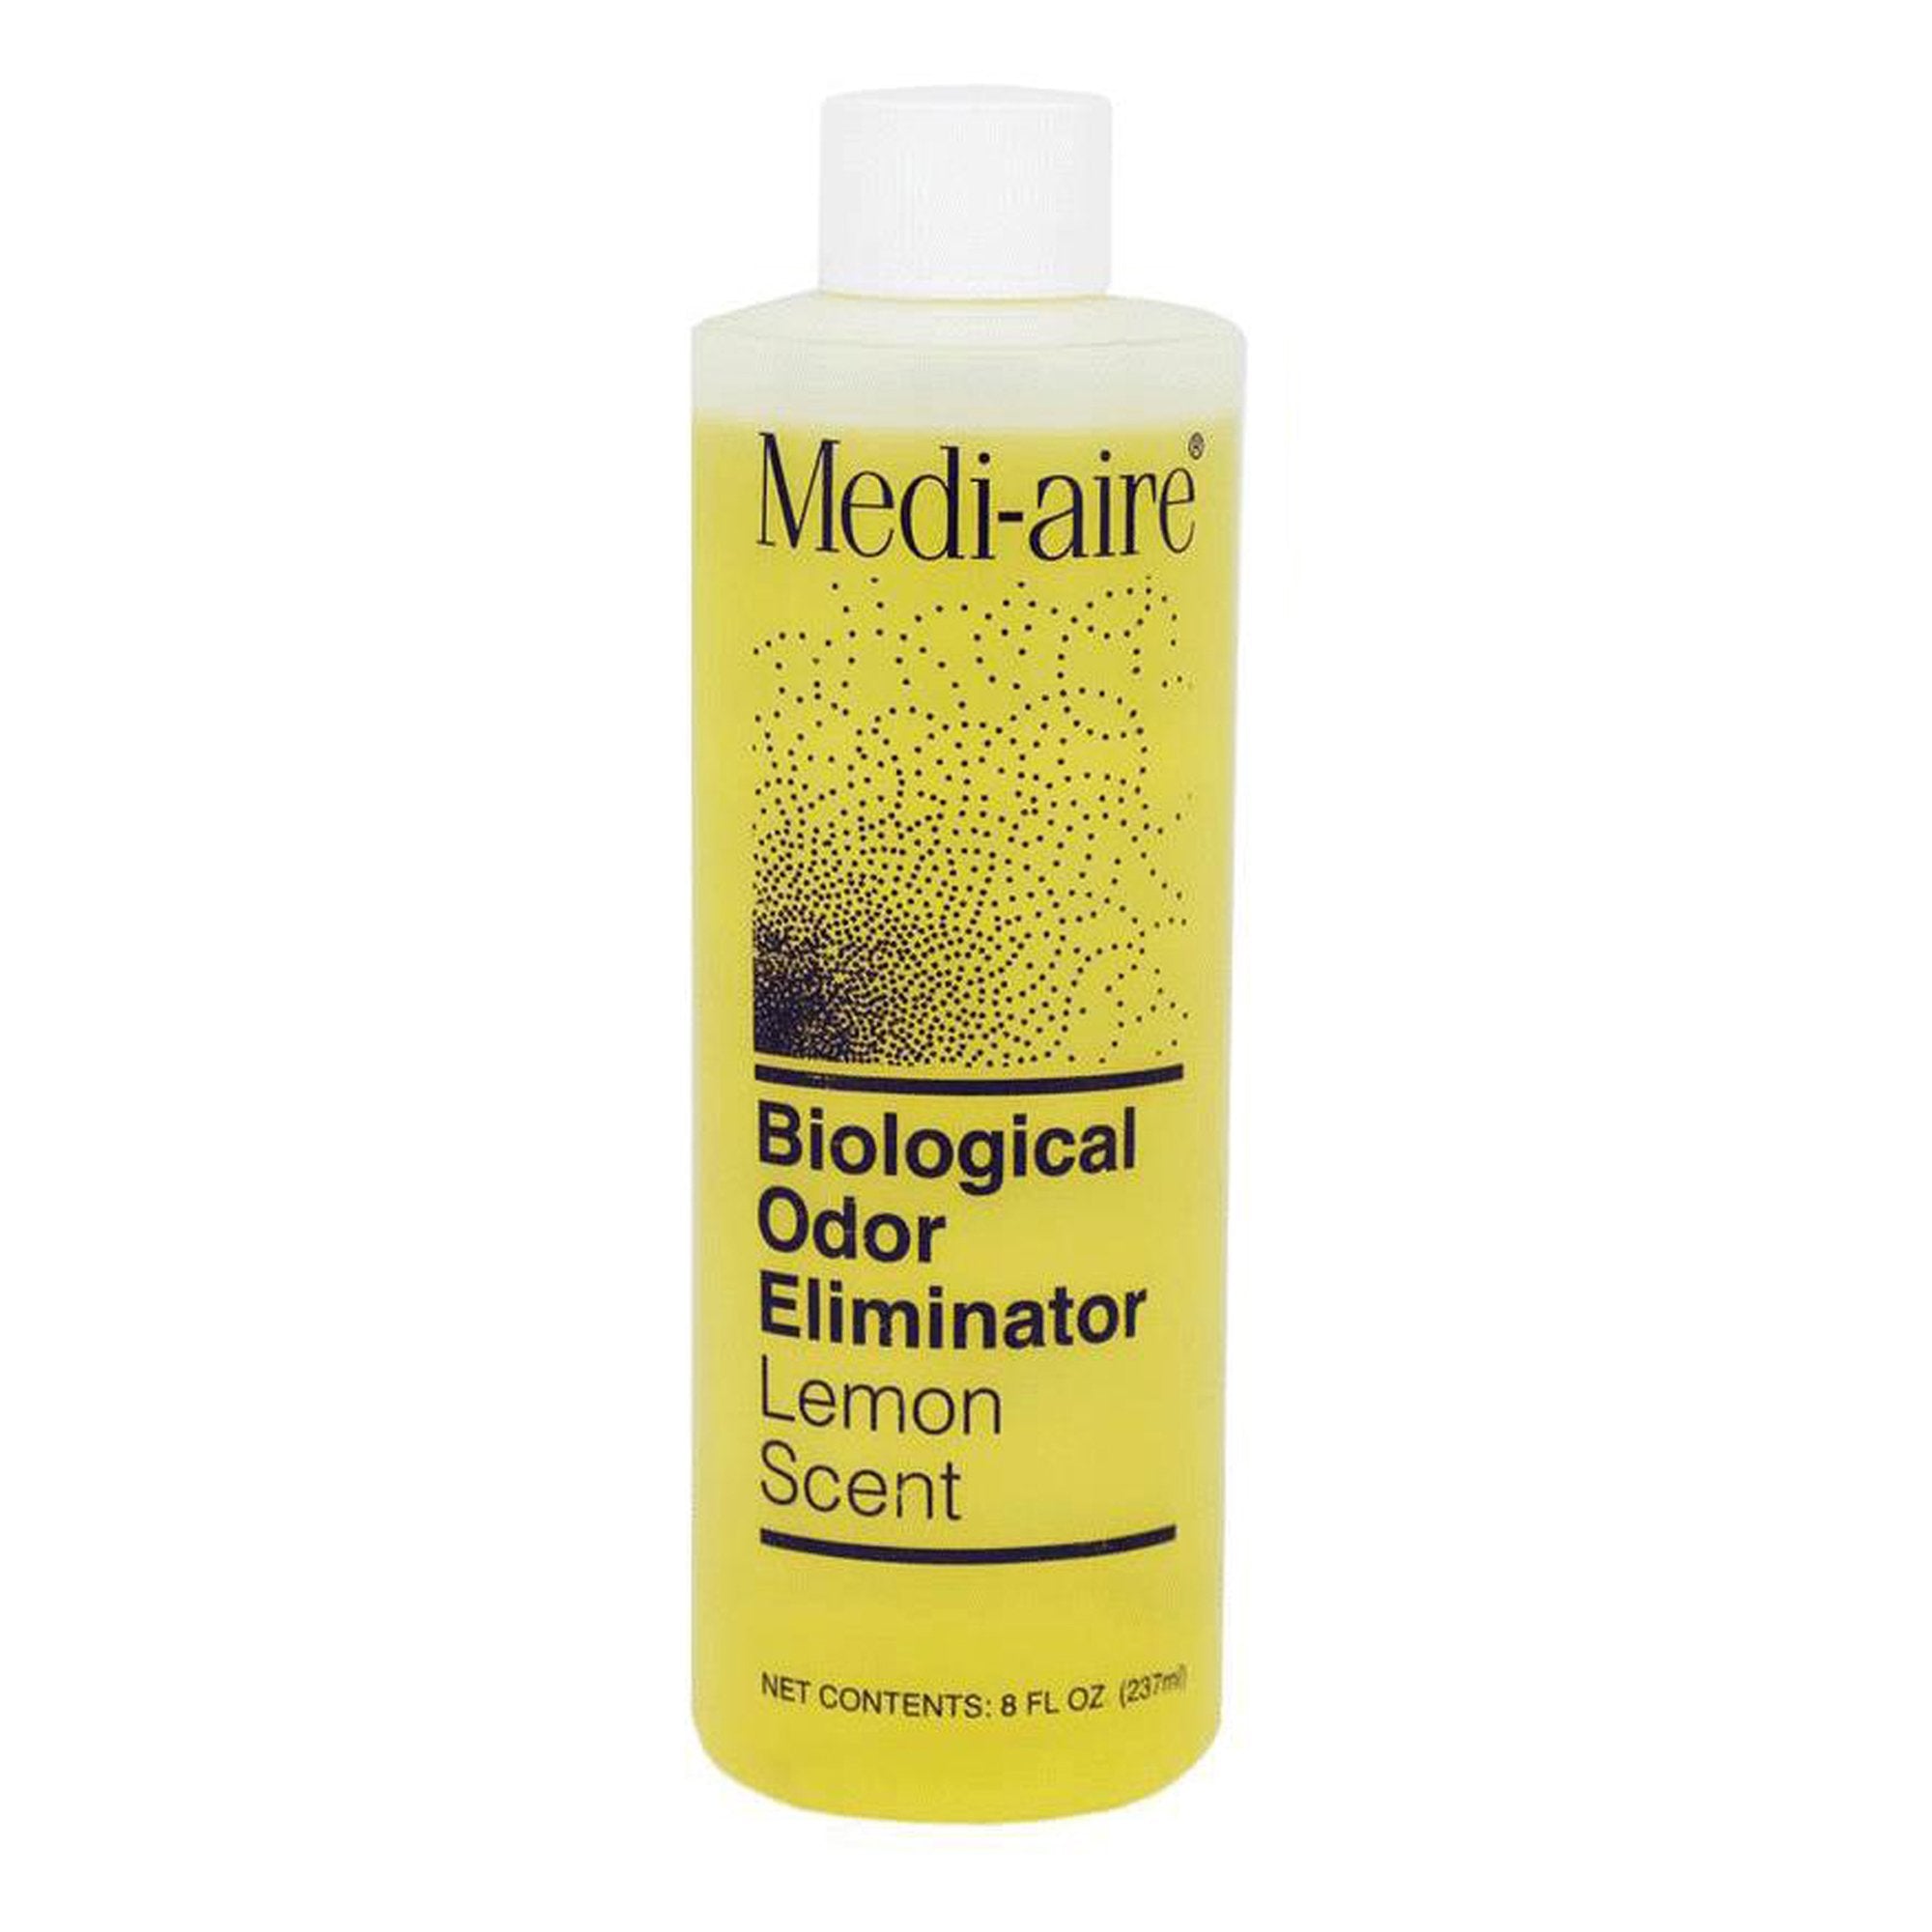 Deodorizer Medi-aire Biological Odor Eliminator Liquid 8 oz. Bottle Lemon Scent